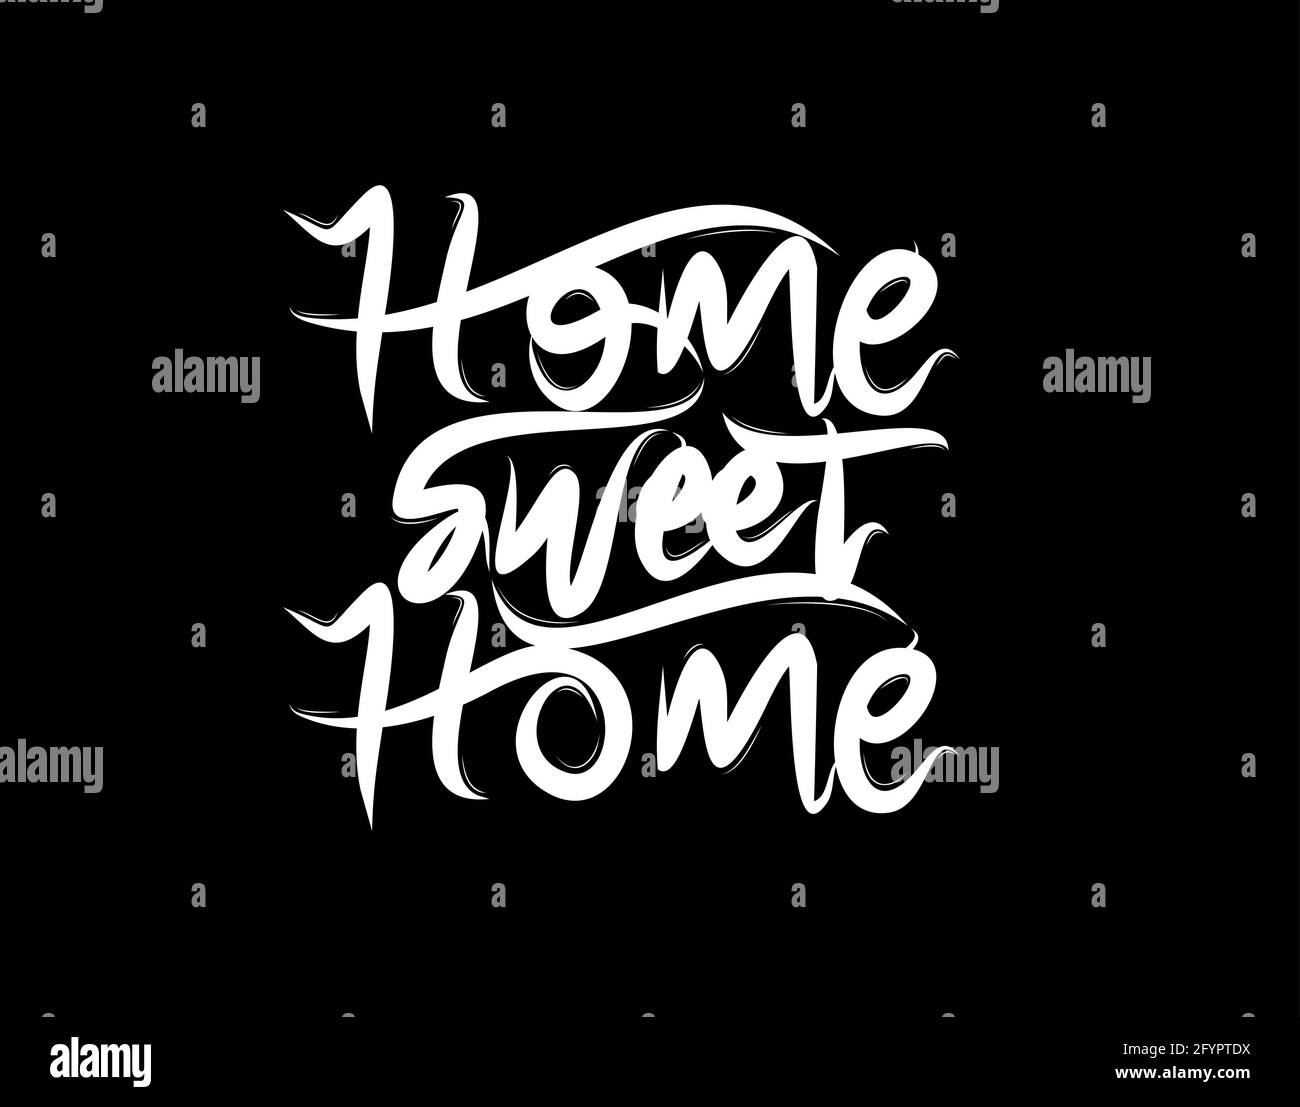 Home scritta Sweet Home testo su sfondo nero nell'illustrazione vettoriale. Per poster di tipografia, album fotografico, etichetta, sovrapposizioni di foto, biglietti d'auguri Illustrazione Vettoriale